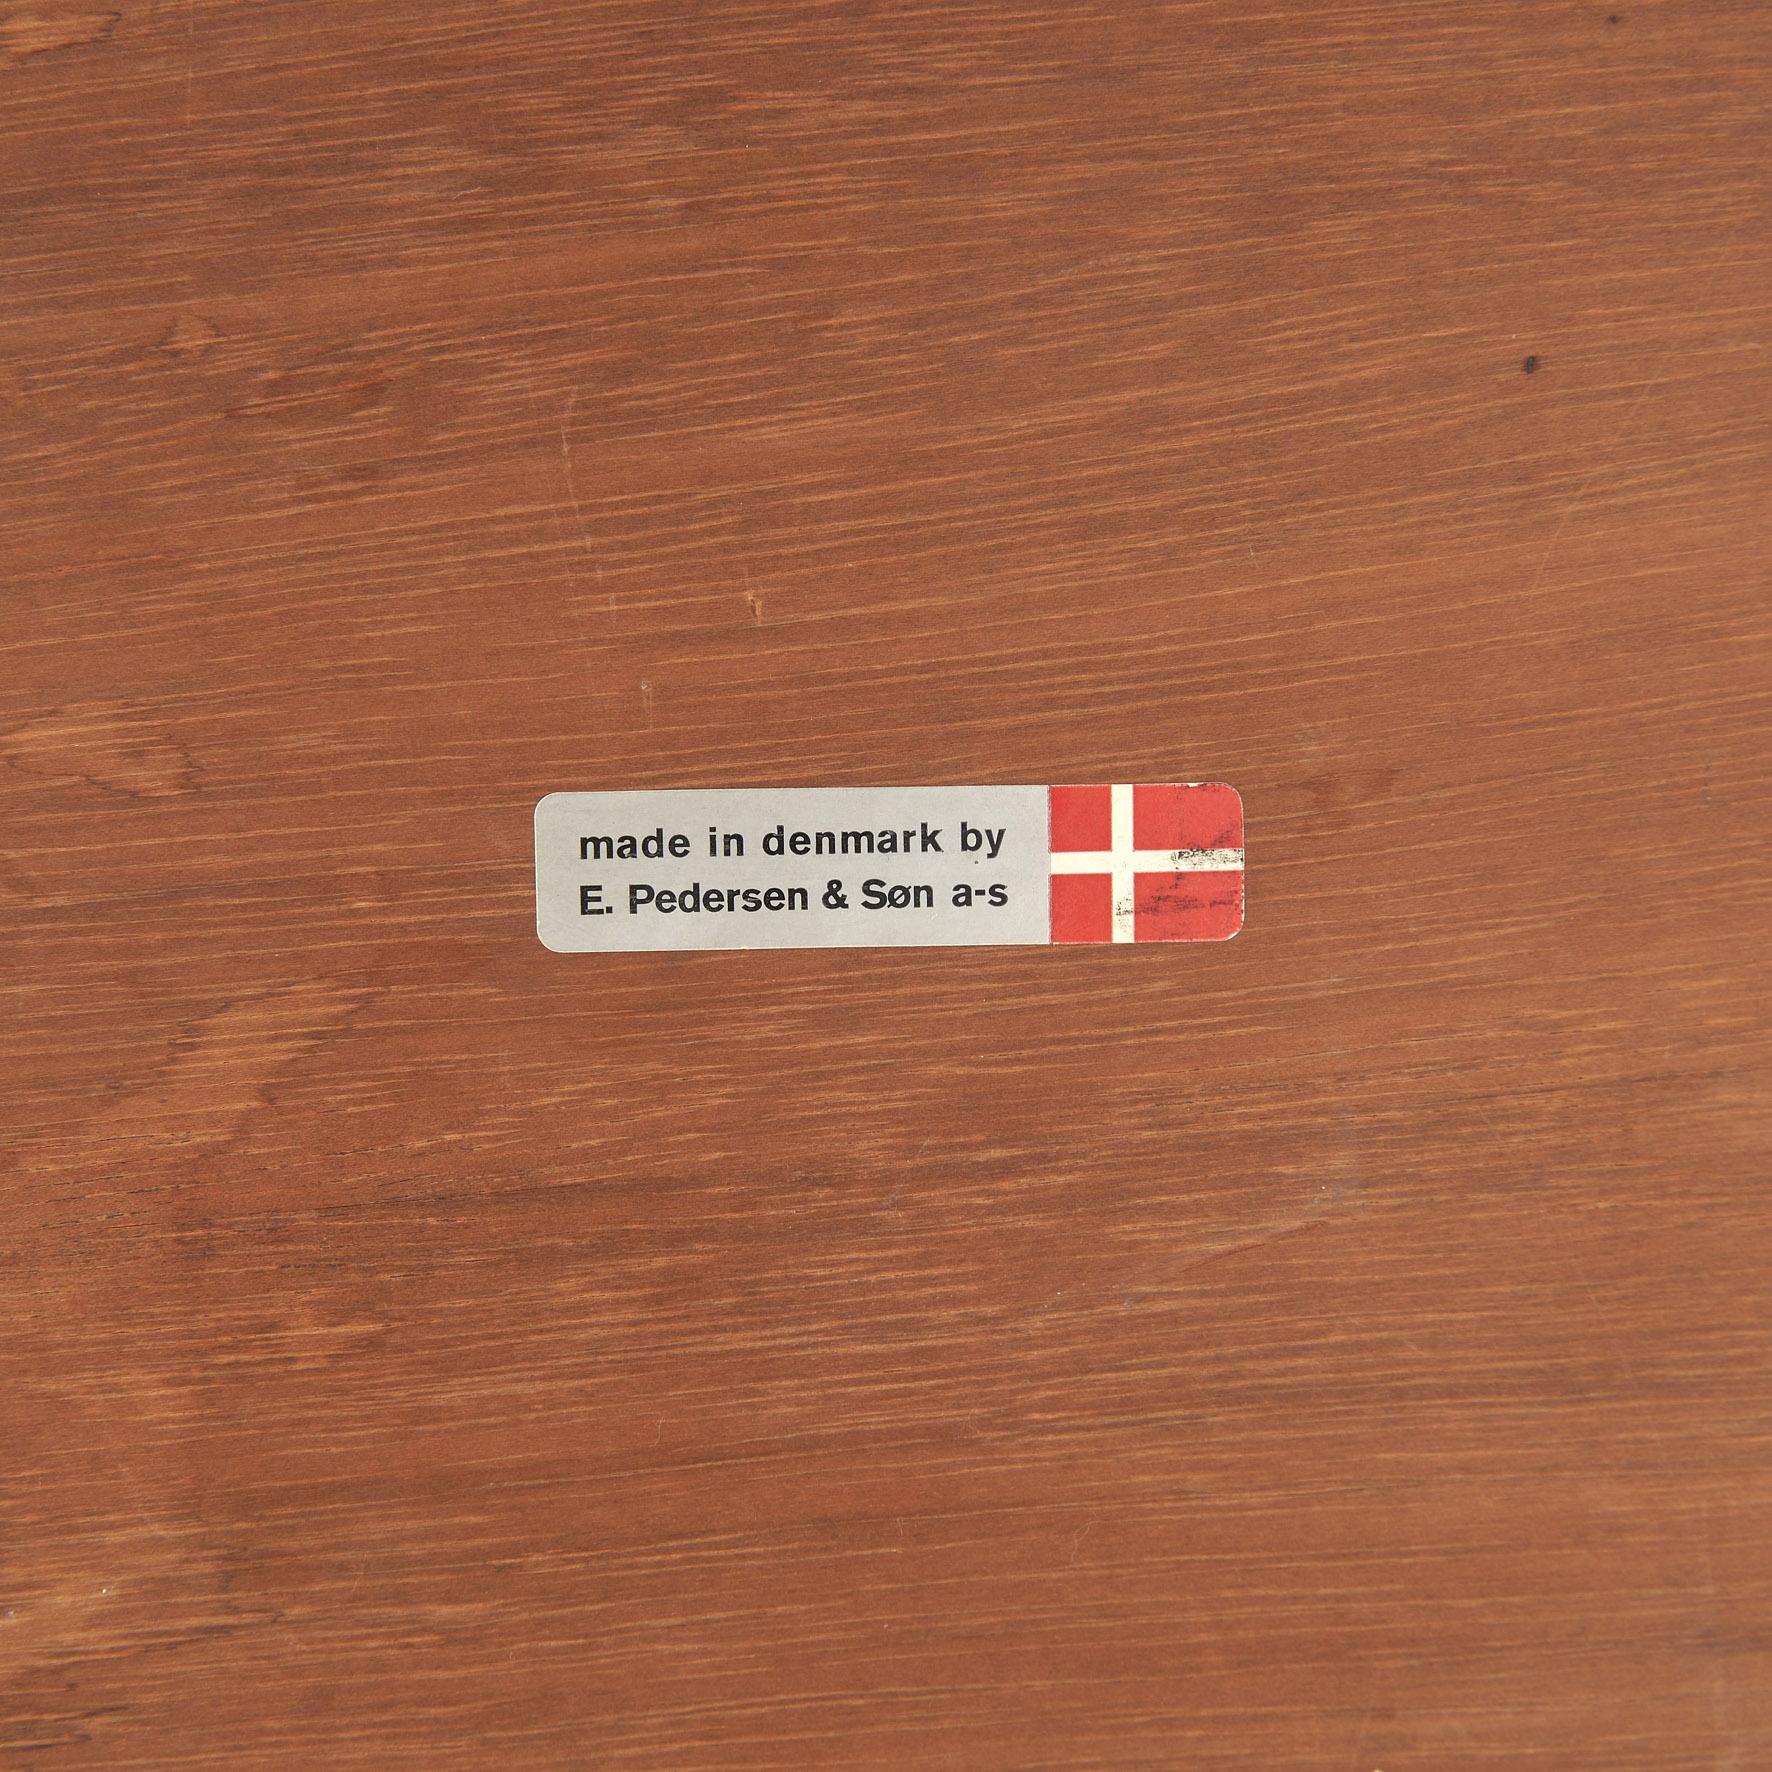 Mid-20th Century Bodil Kjaer Executive Free Standing Desk for E. Pedersen & Son Denmark For Sale